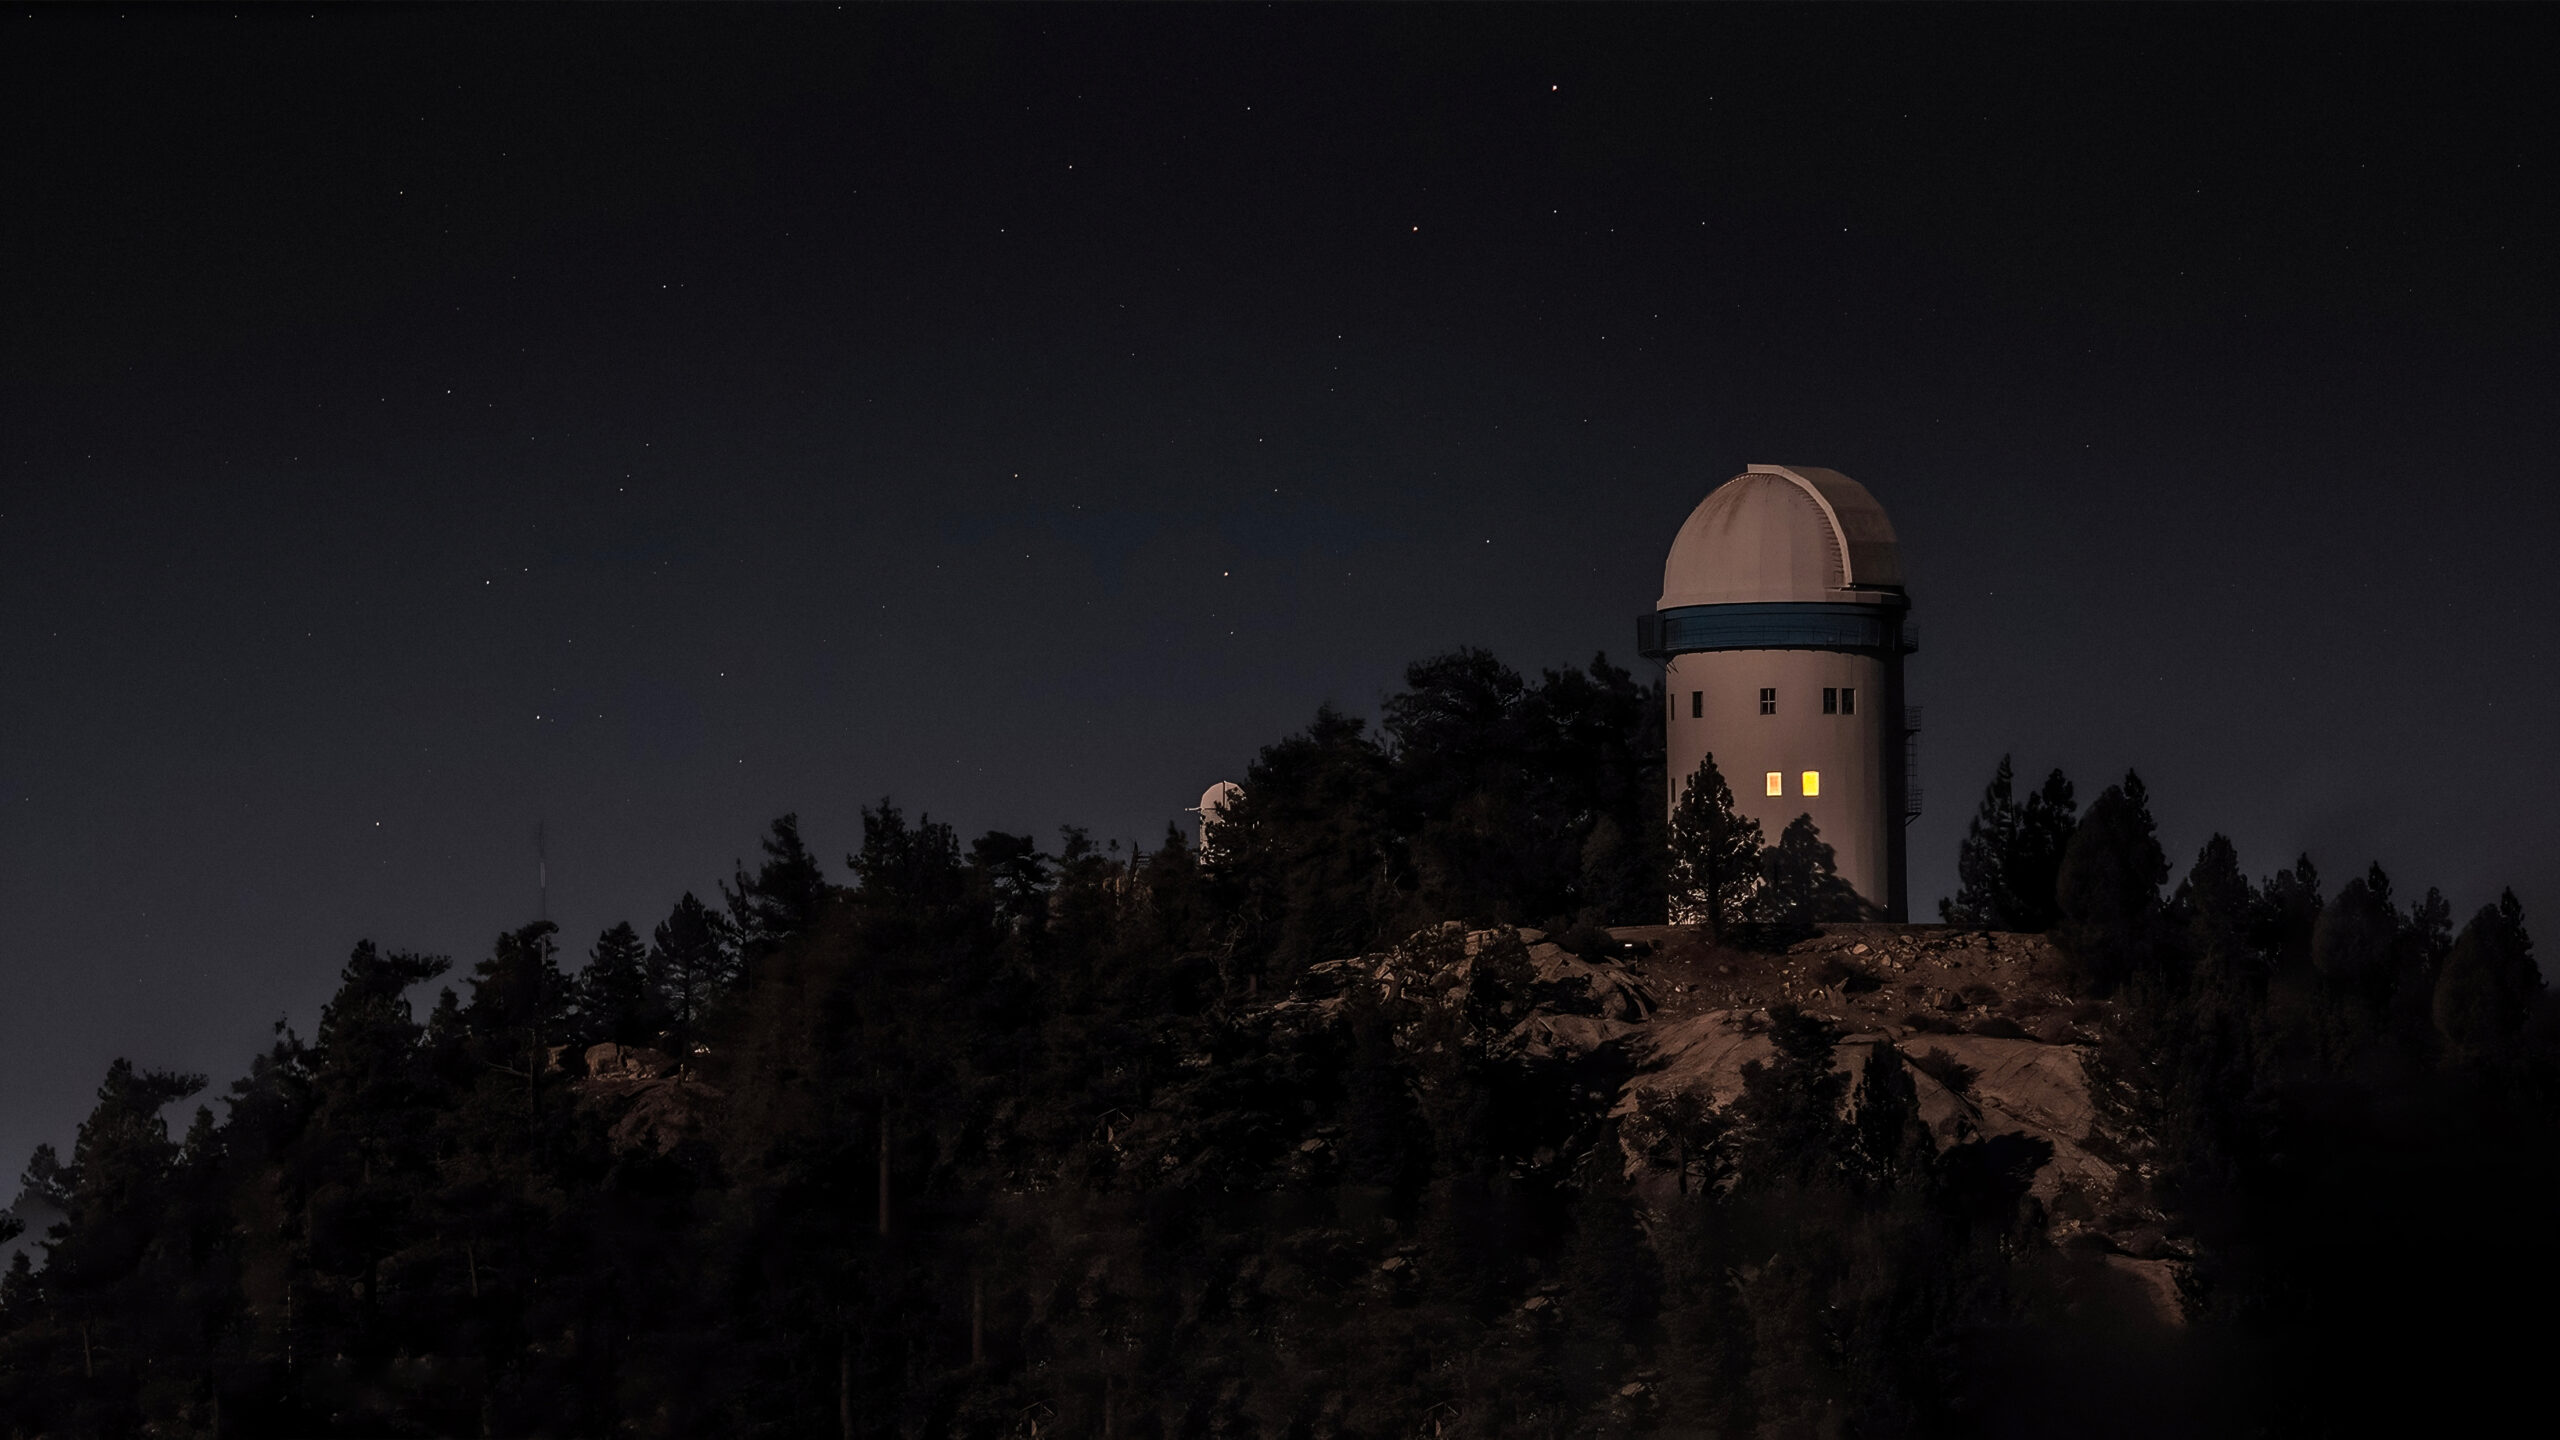 Observatorio Astronómico Nacional de la sierra san pedro mártir de noche